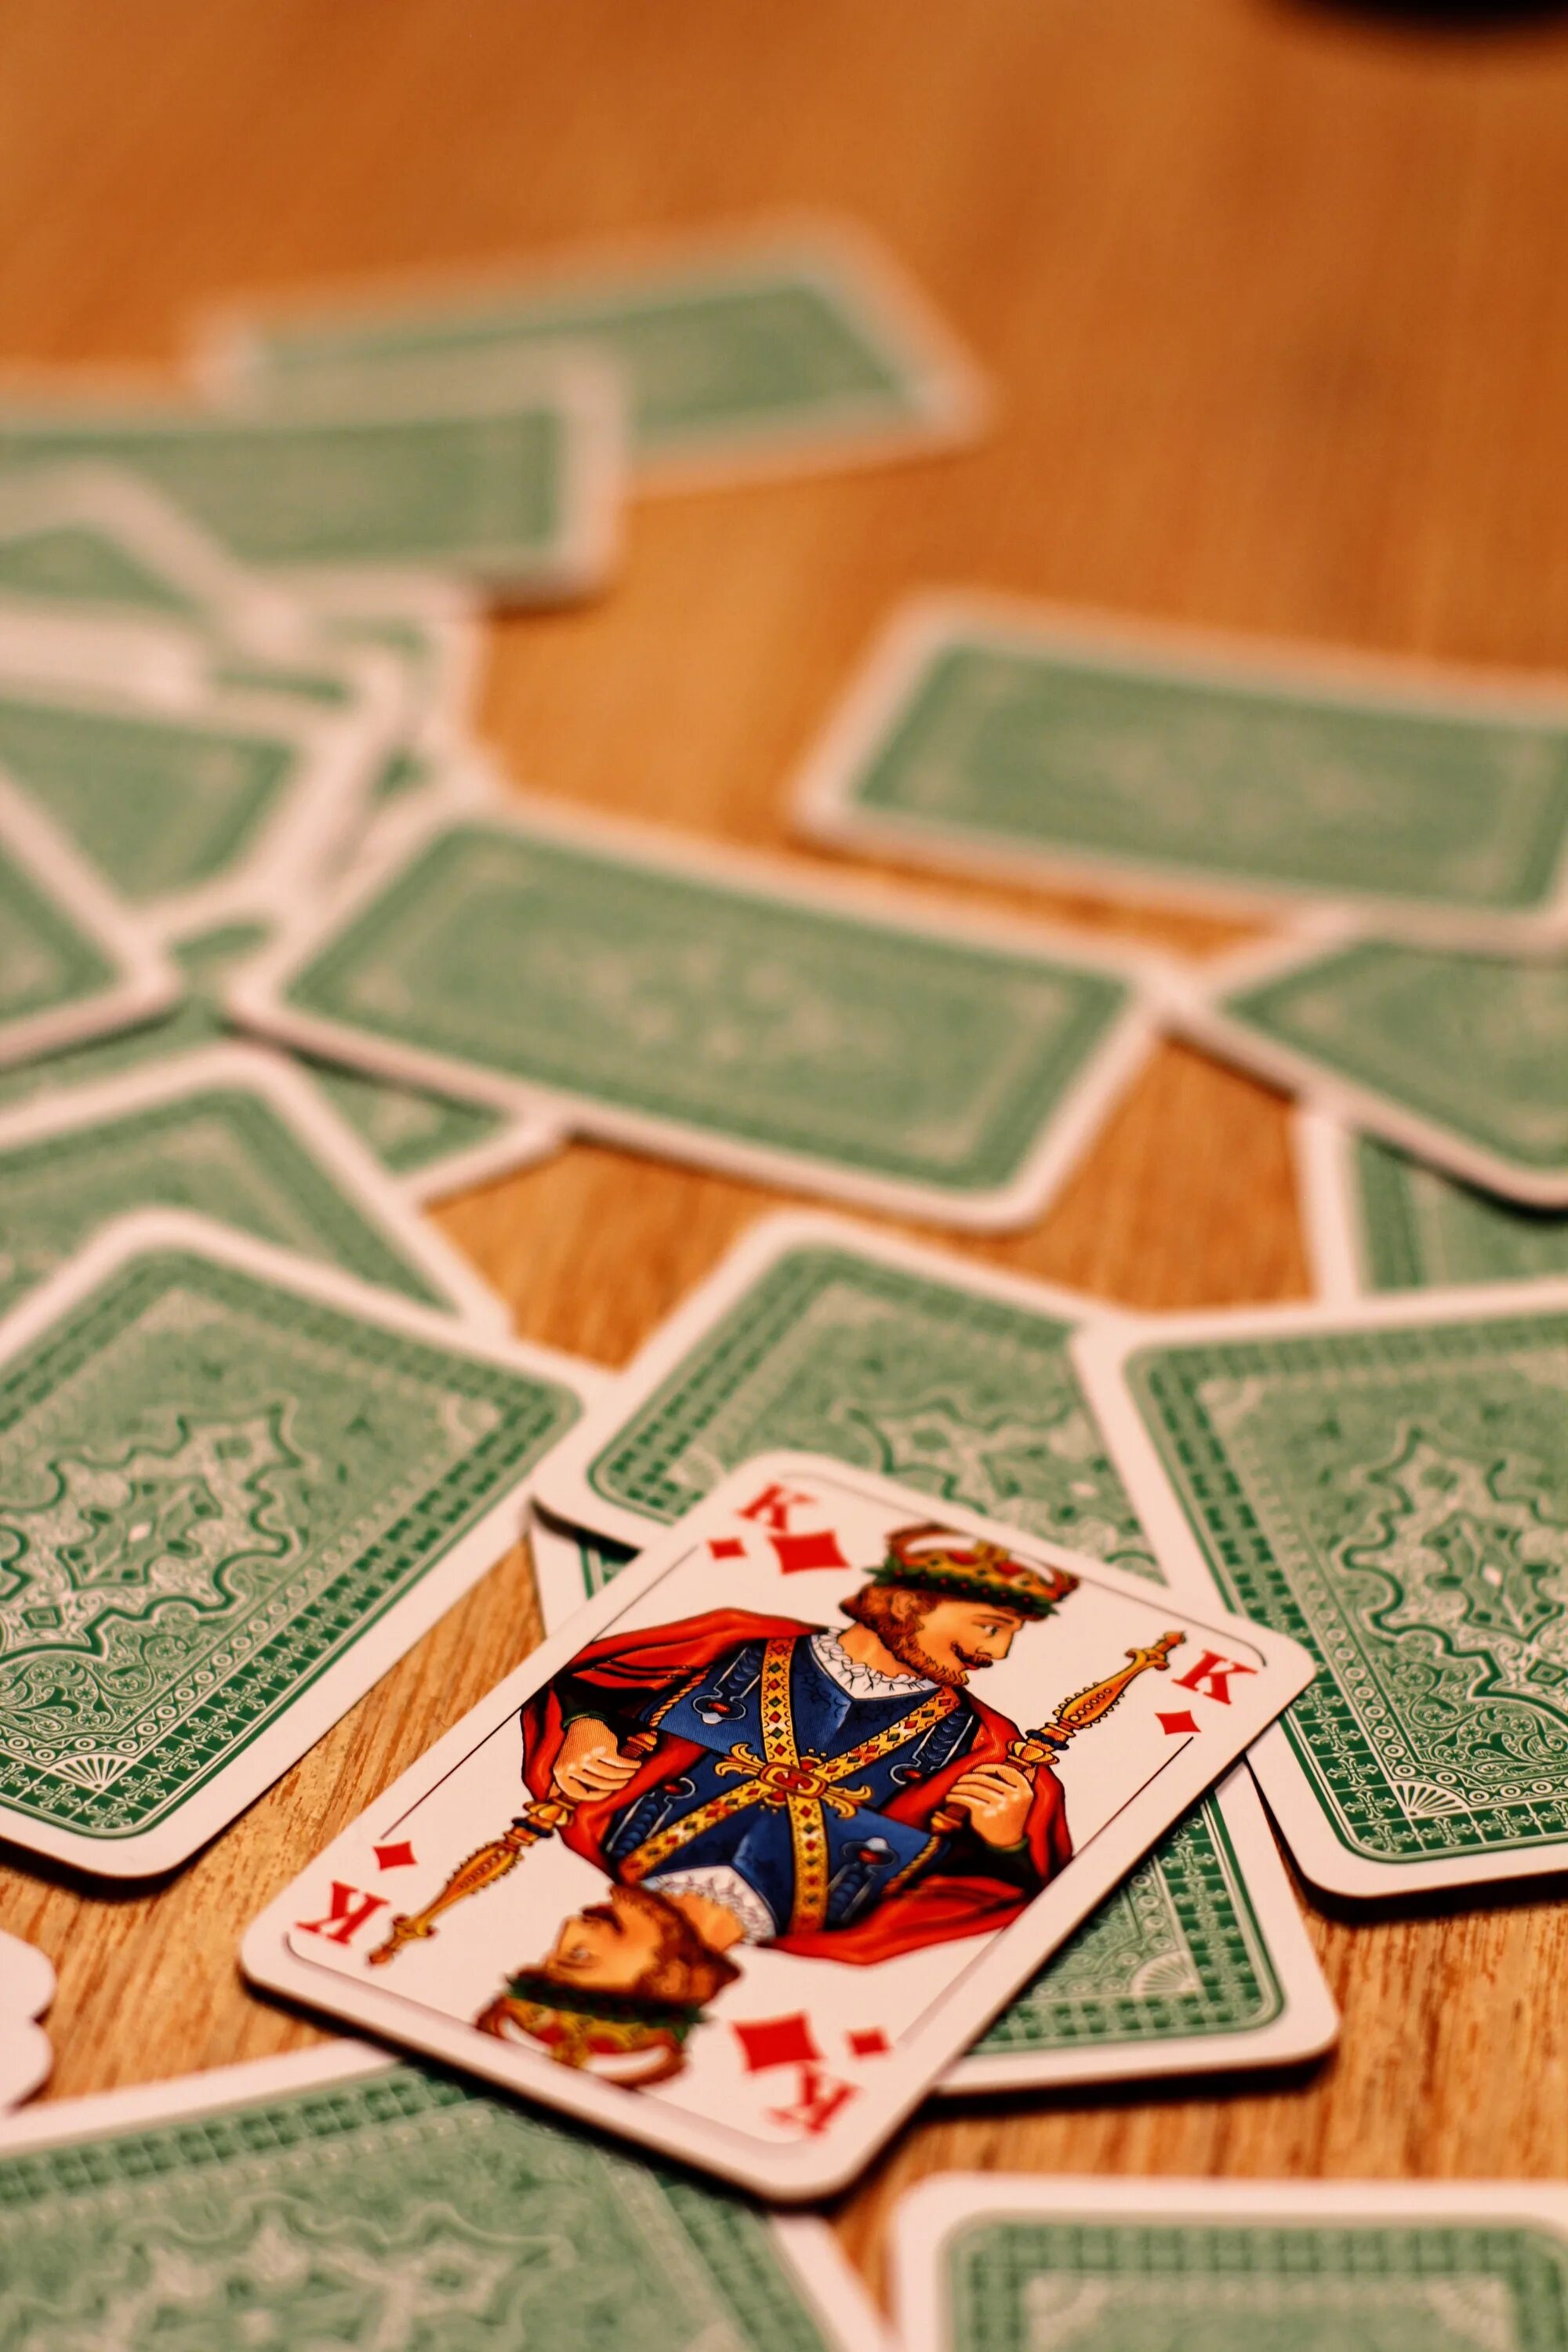 Card game игра. Карточные игры. Красивые карточные игры. Азартная карточная игра. Карточки в азартных играх.